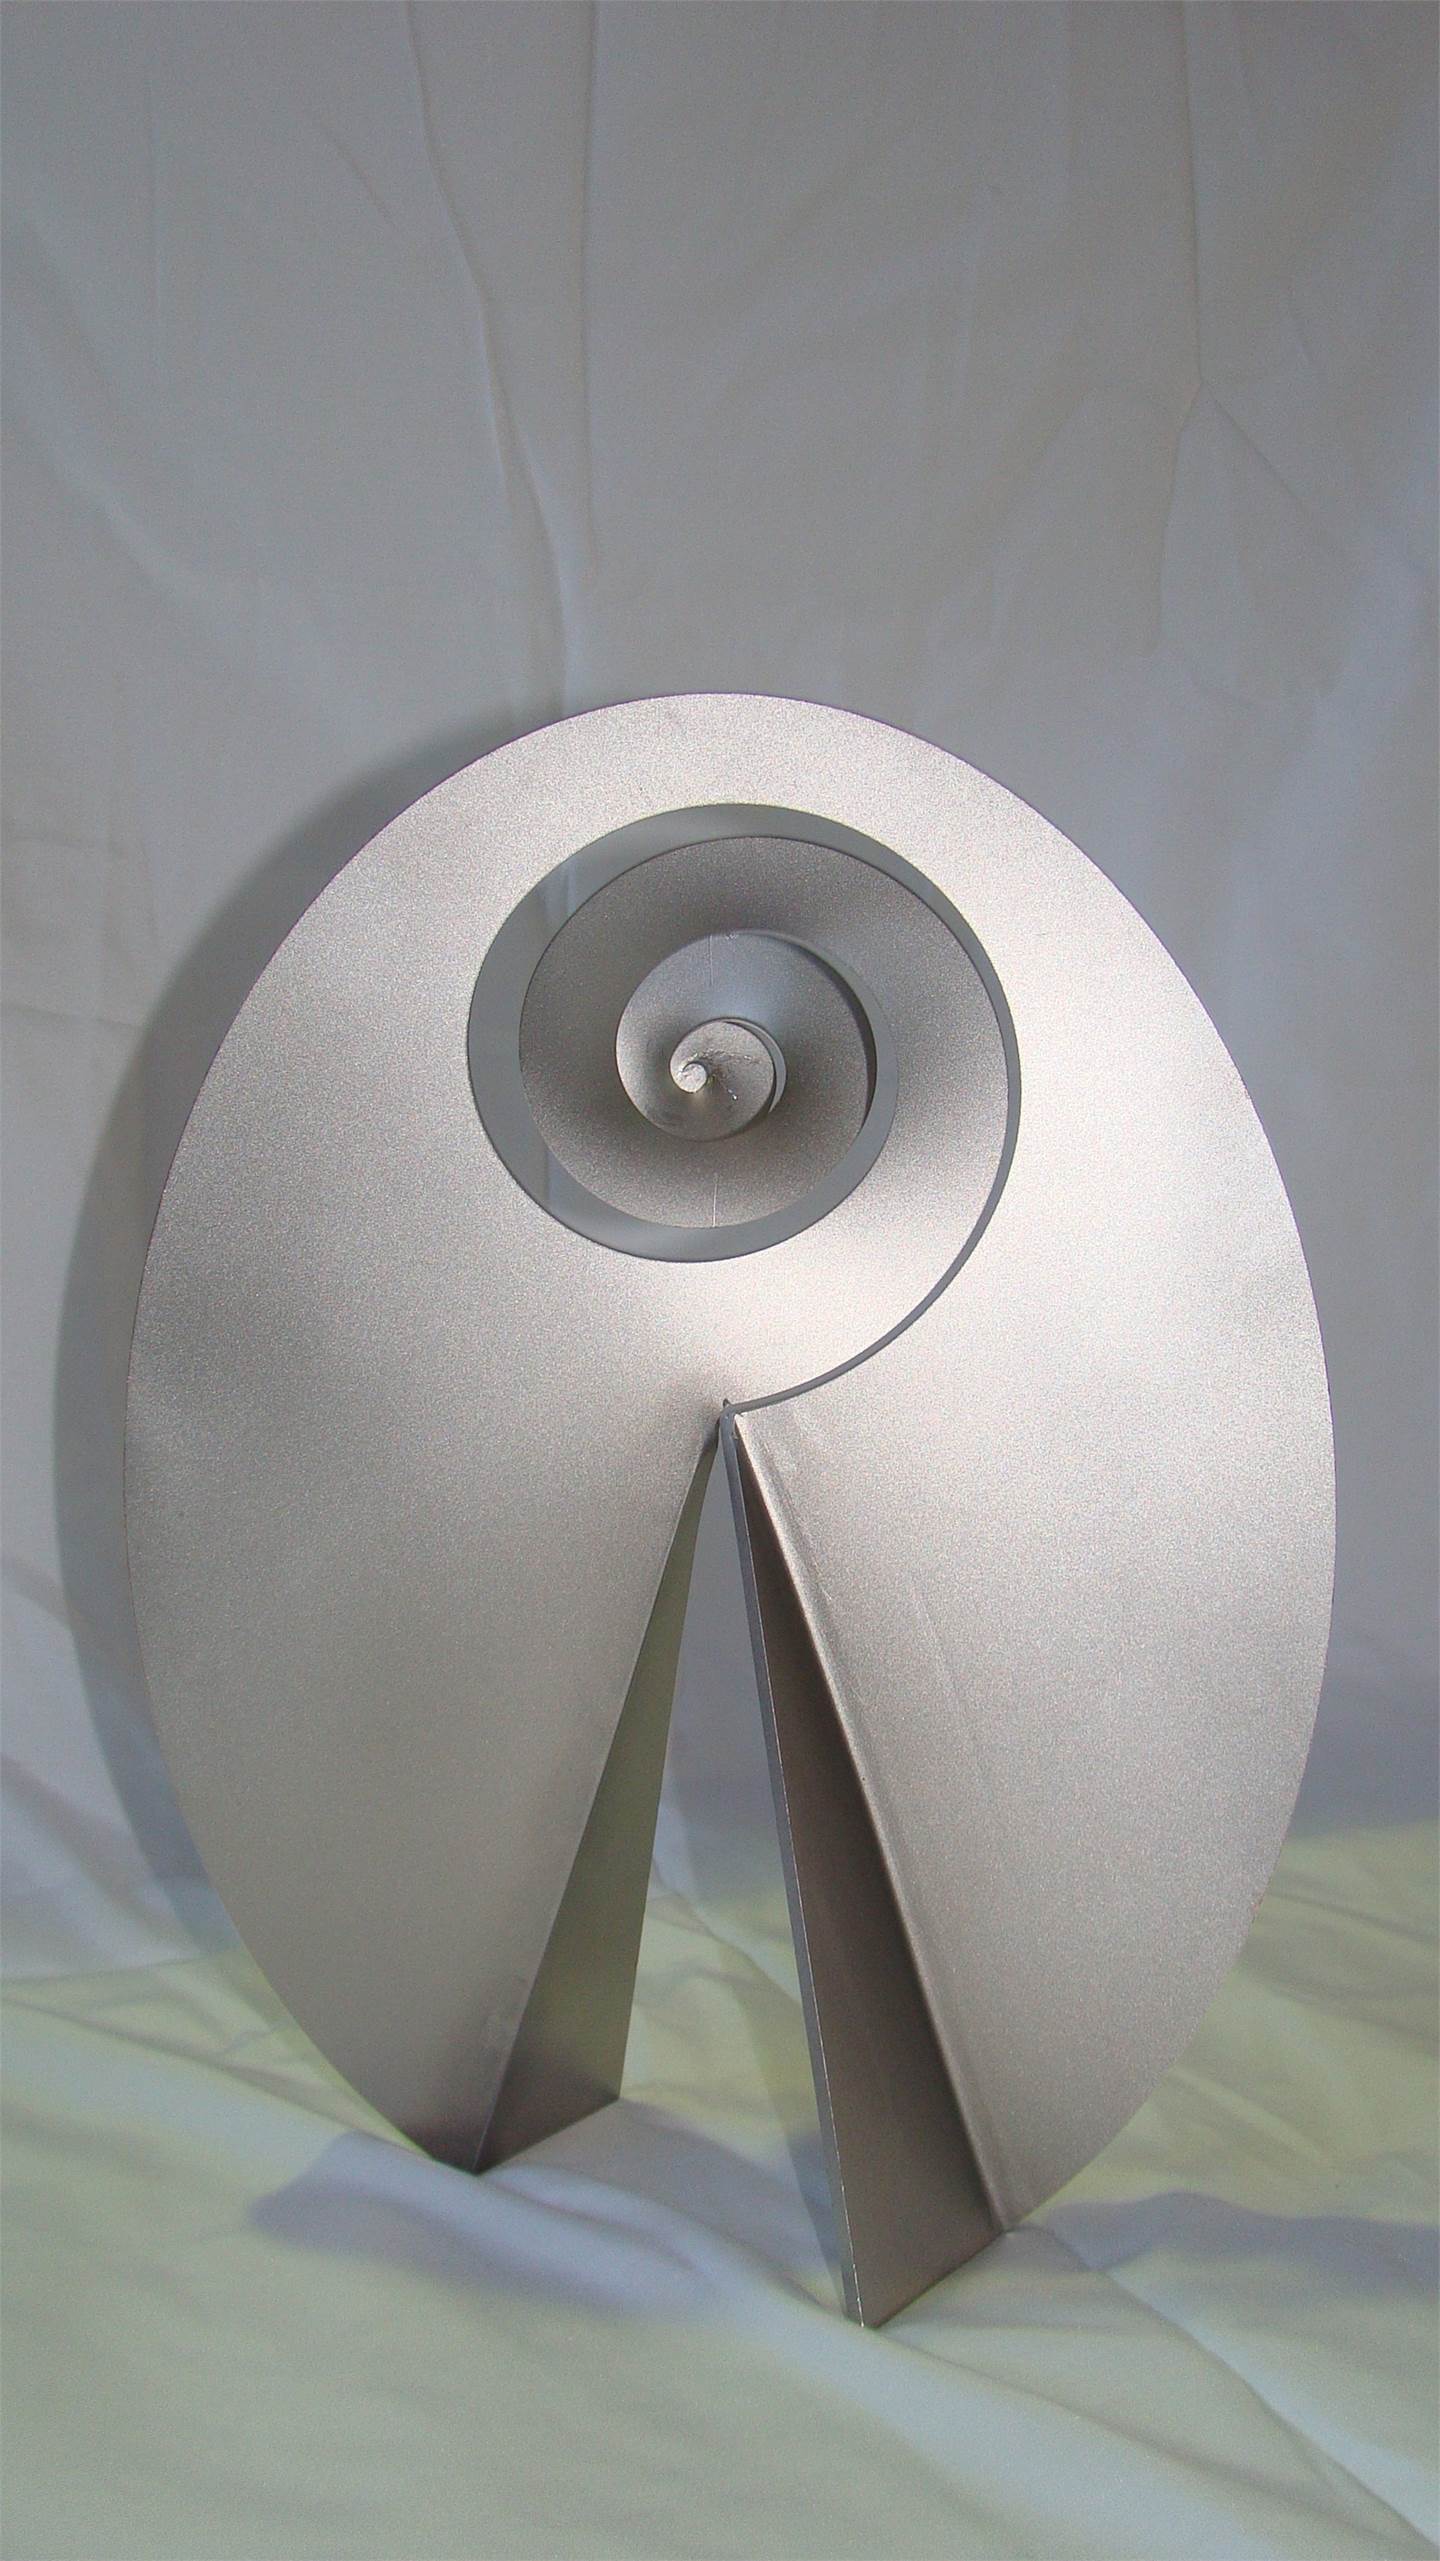 Carrapicho ó vento mareiro (Descomposición del óvalo), original   Sculpture par Juan Coruxo